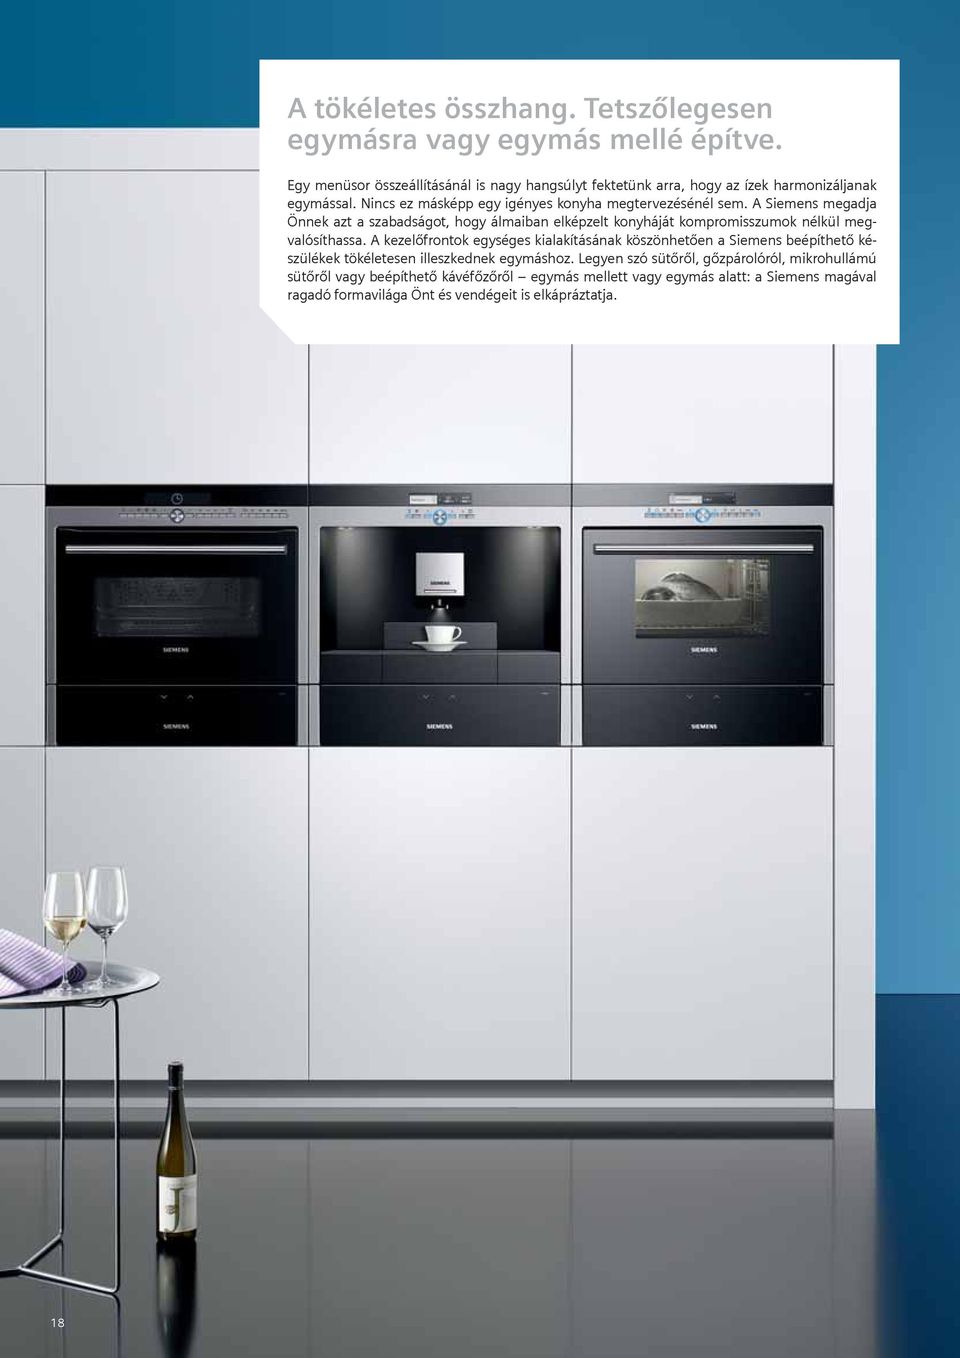 A Siemens megadja Önnek azt a szabadságot, hogy álmaiban elképzelt konyháját kompromisszumok nélkül megvalósíthassa.